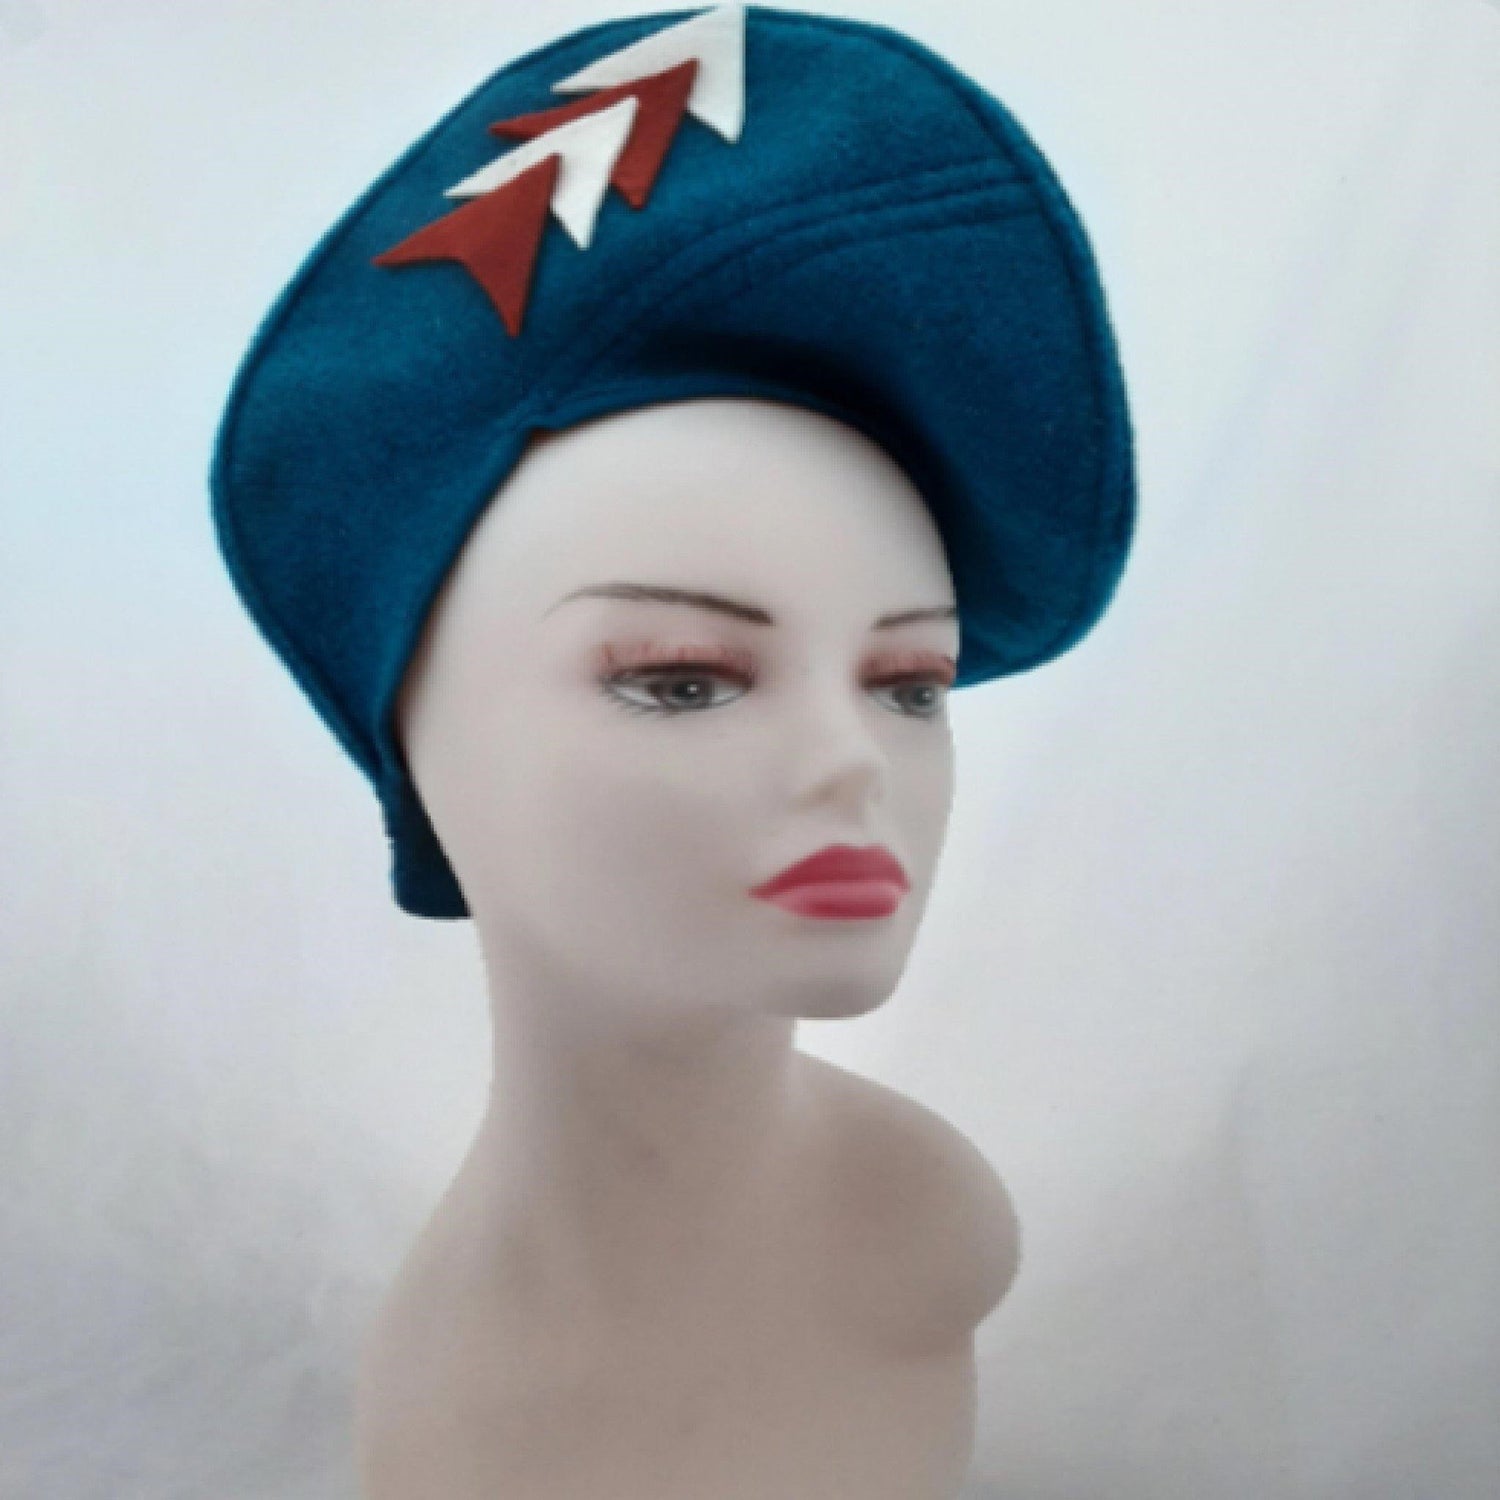 Model in a hat